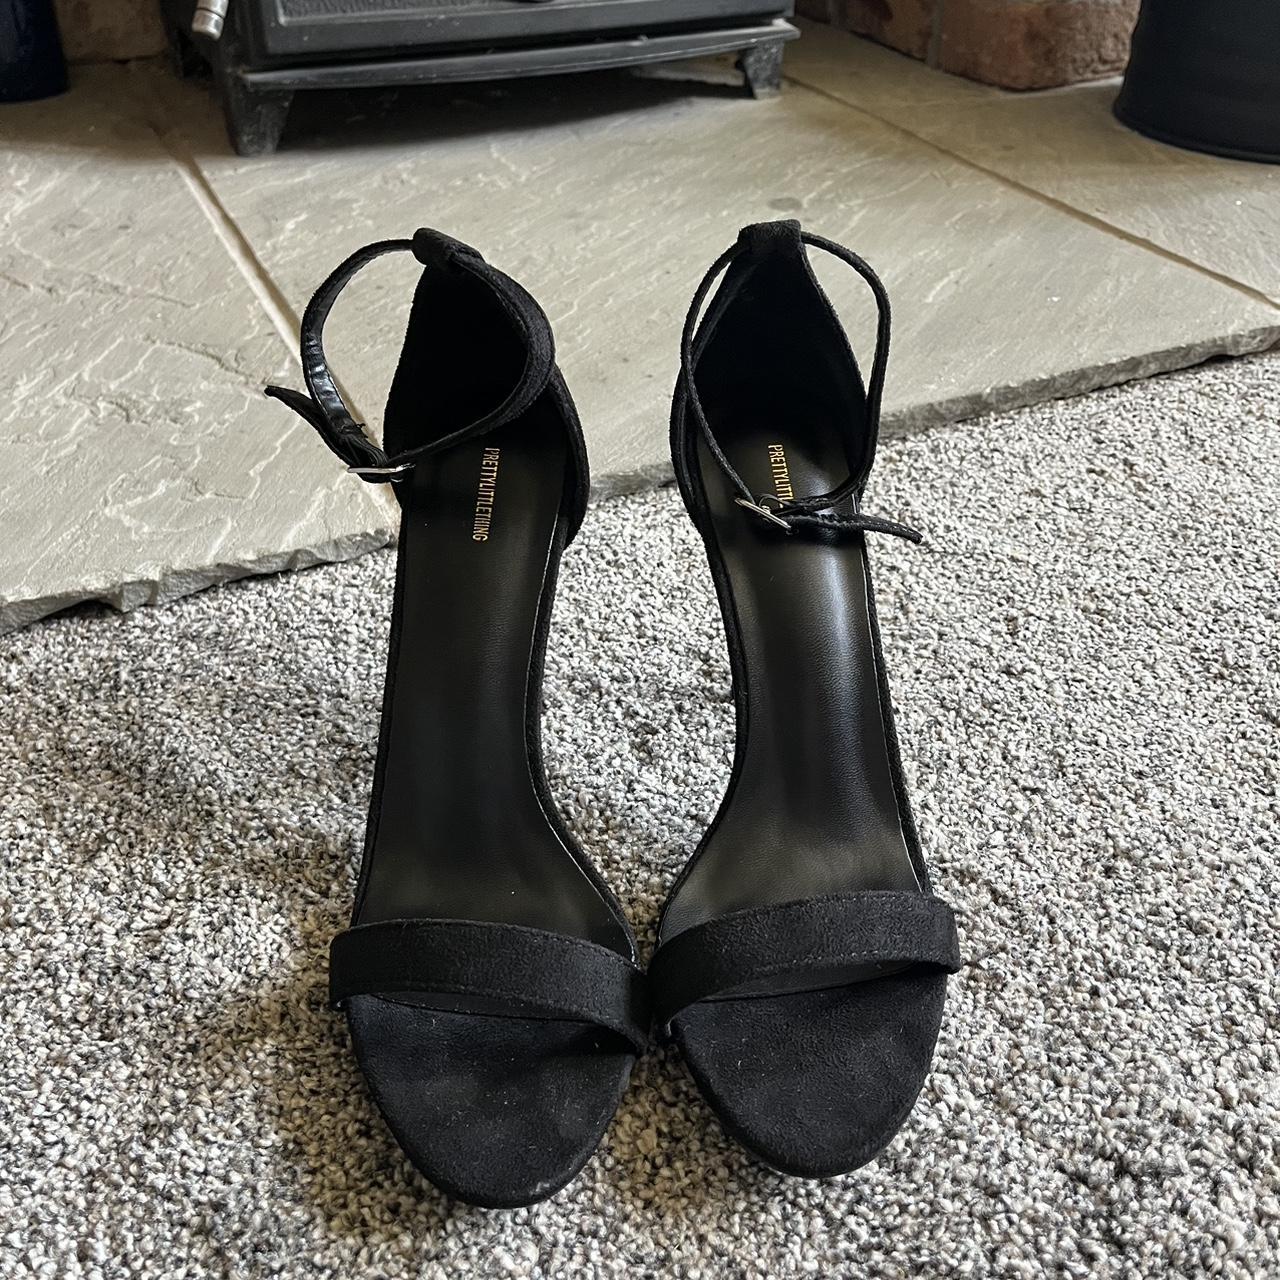 Black Stiletto High Heels, Size 6 from PLT Worn... - Depop